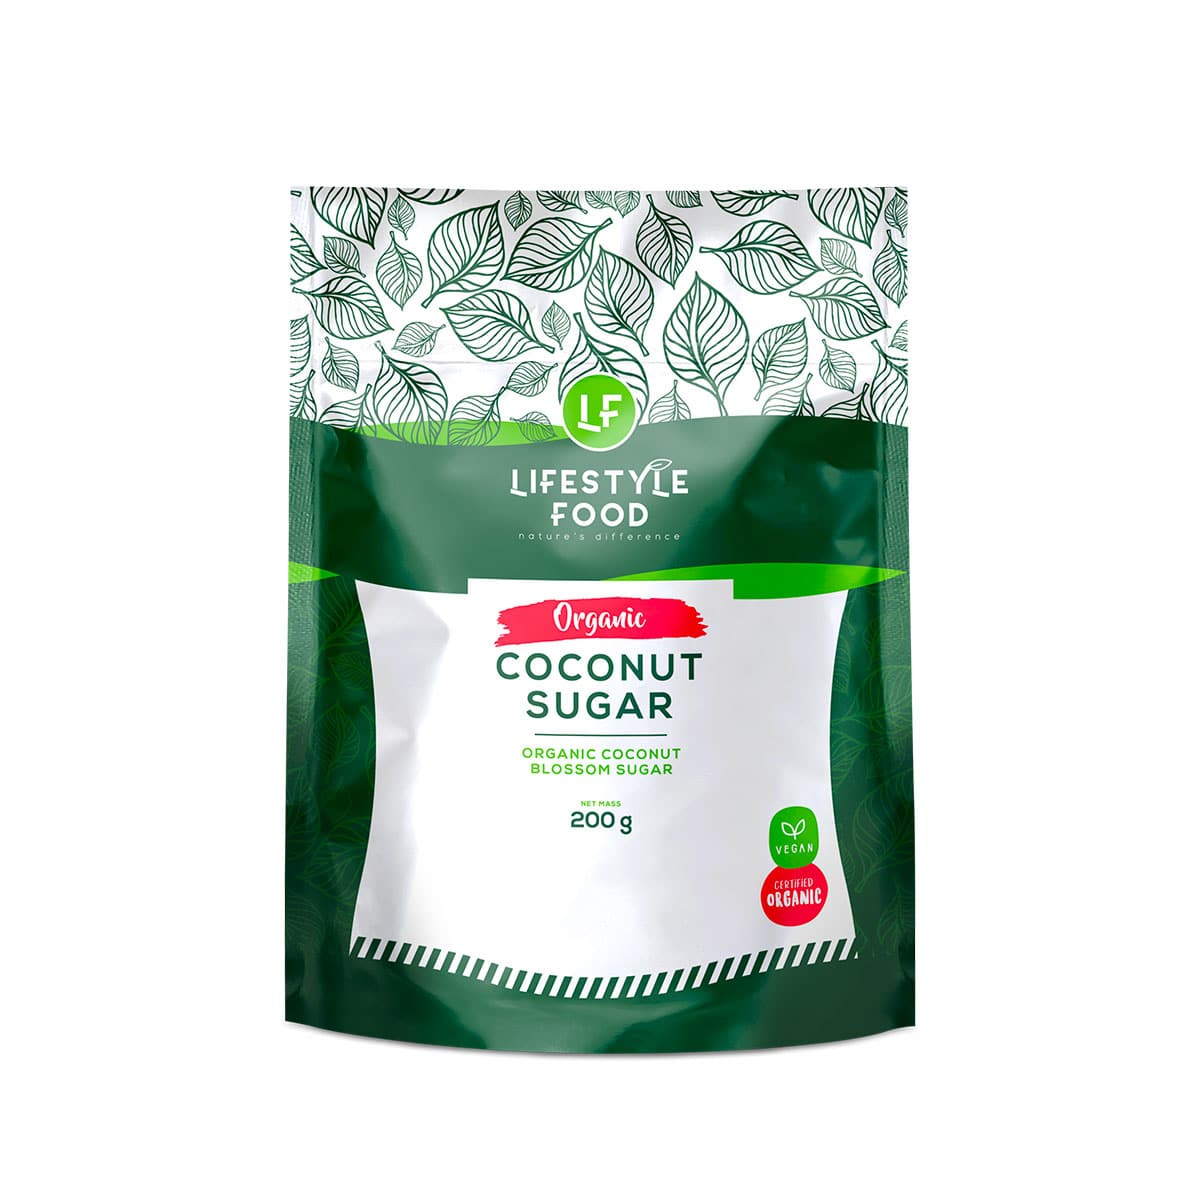 Lifestyle Food Organic Coconut Sugar - 200g